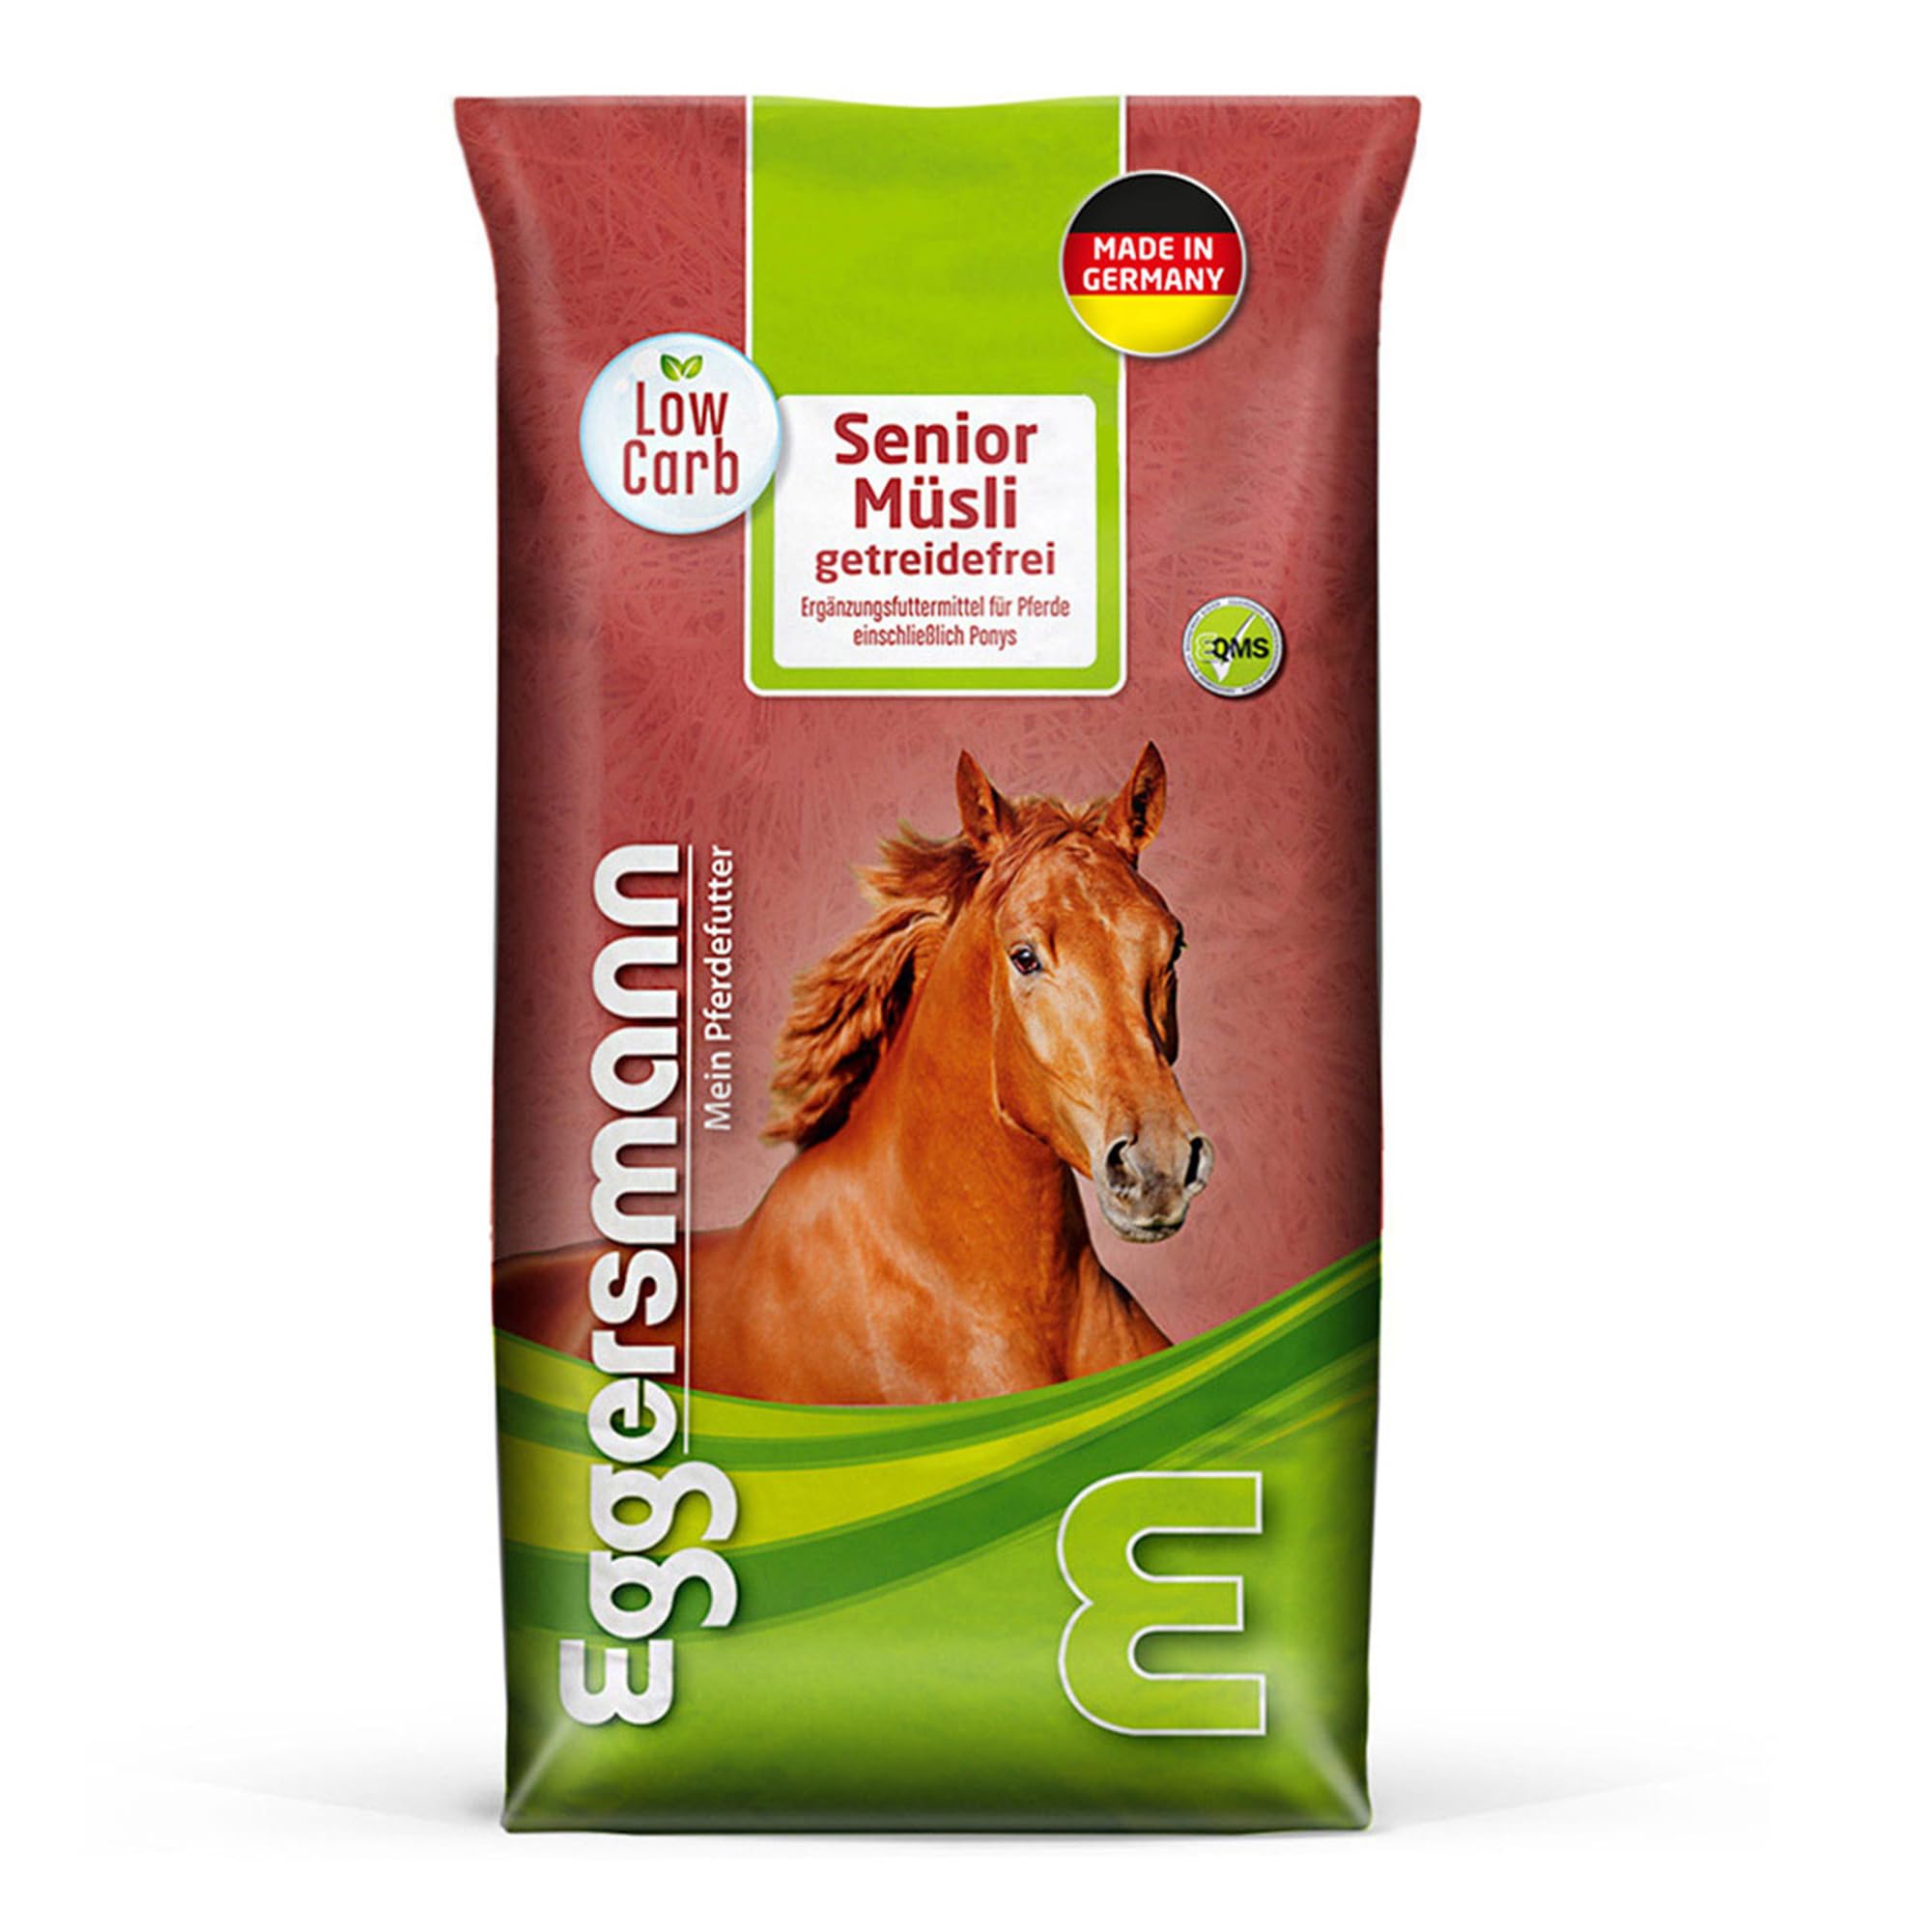 Eggersmann Pferdemüsli Senior getreidefrei - 15kg Natürliches getreidefreies Pferdefutter mit erhöhtem Energiegehalt - Pferdefutter ideal für stoffwechselkranke Pferde